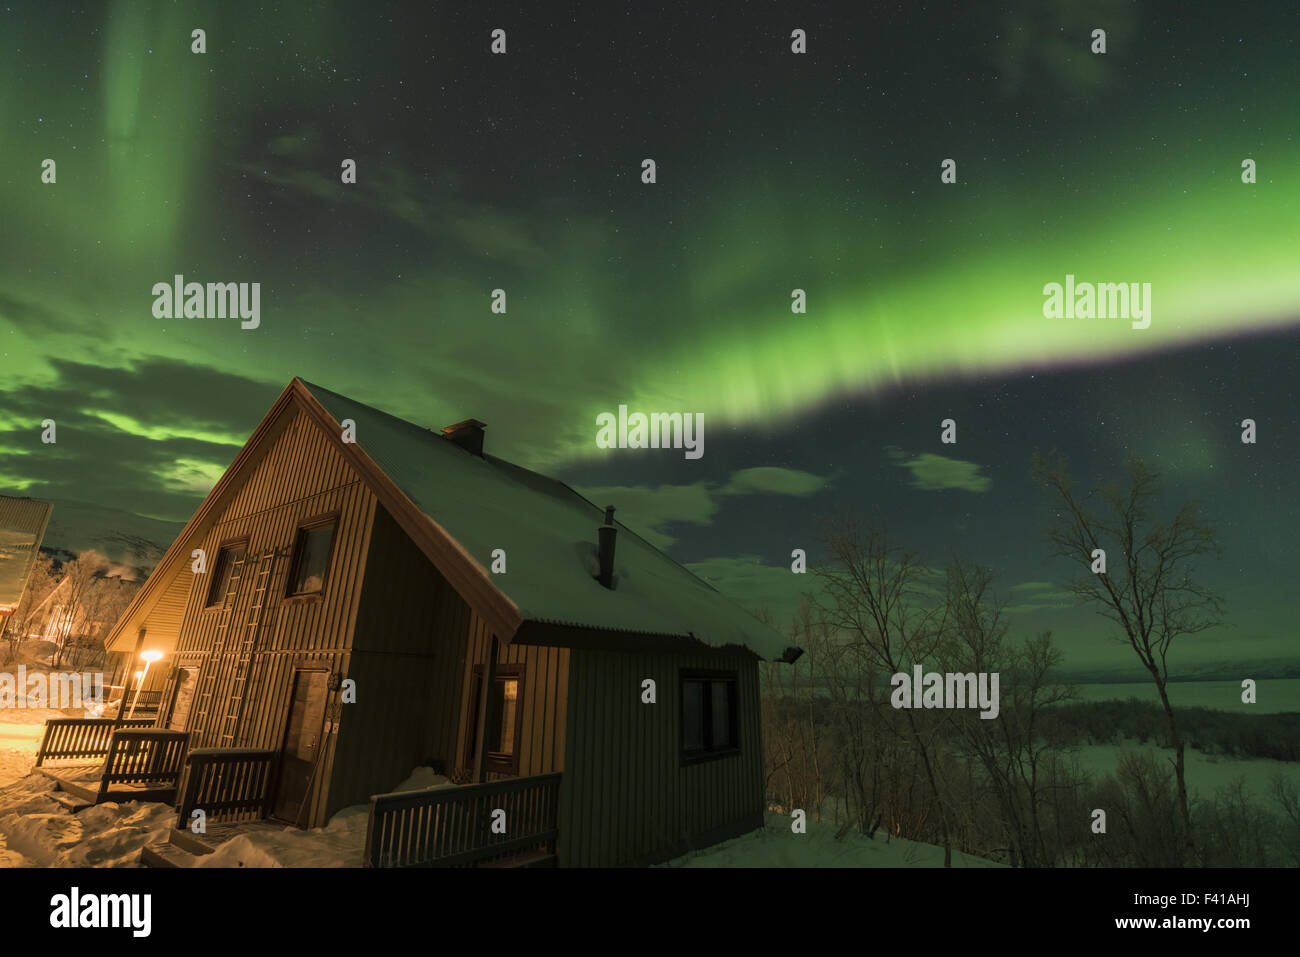 Northern lights, Abisko, Lapland, Sweden Stock Photo